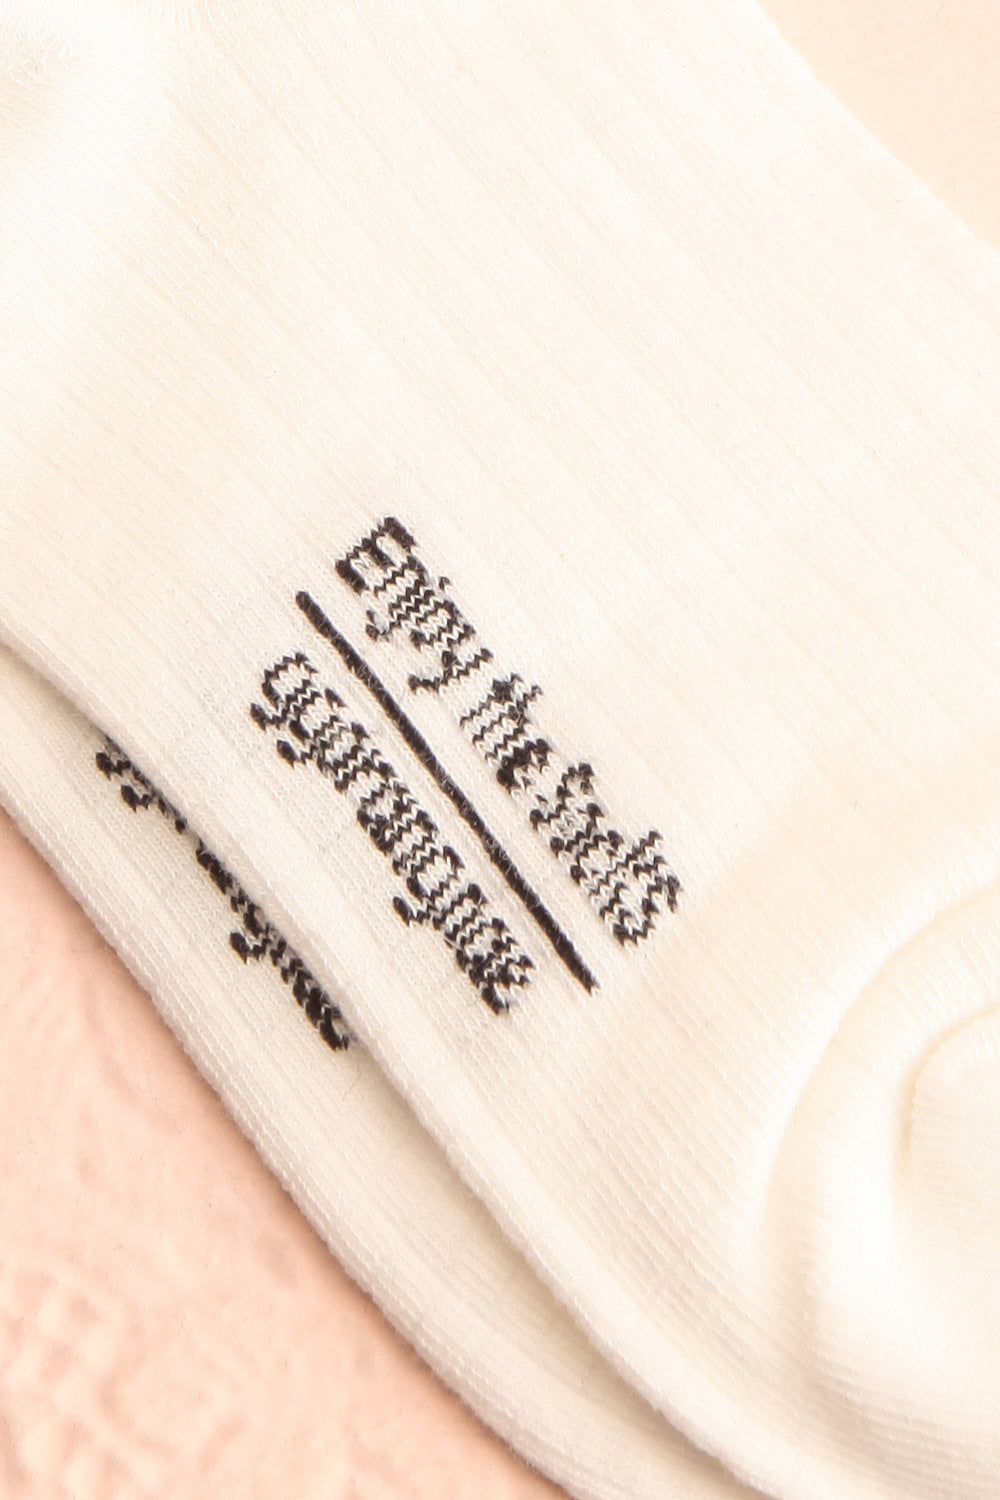 Cocotte White Socks w/ Bow Detail | Boutique 1861 details